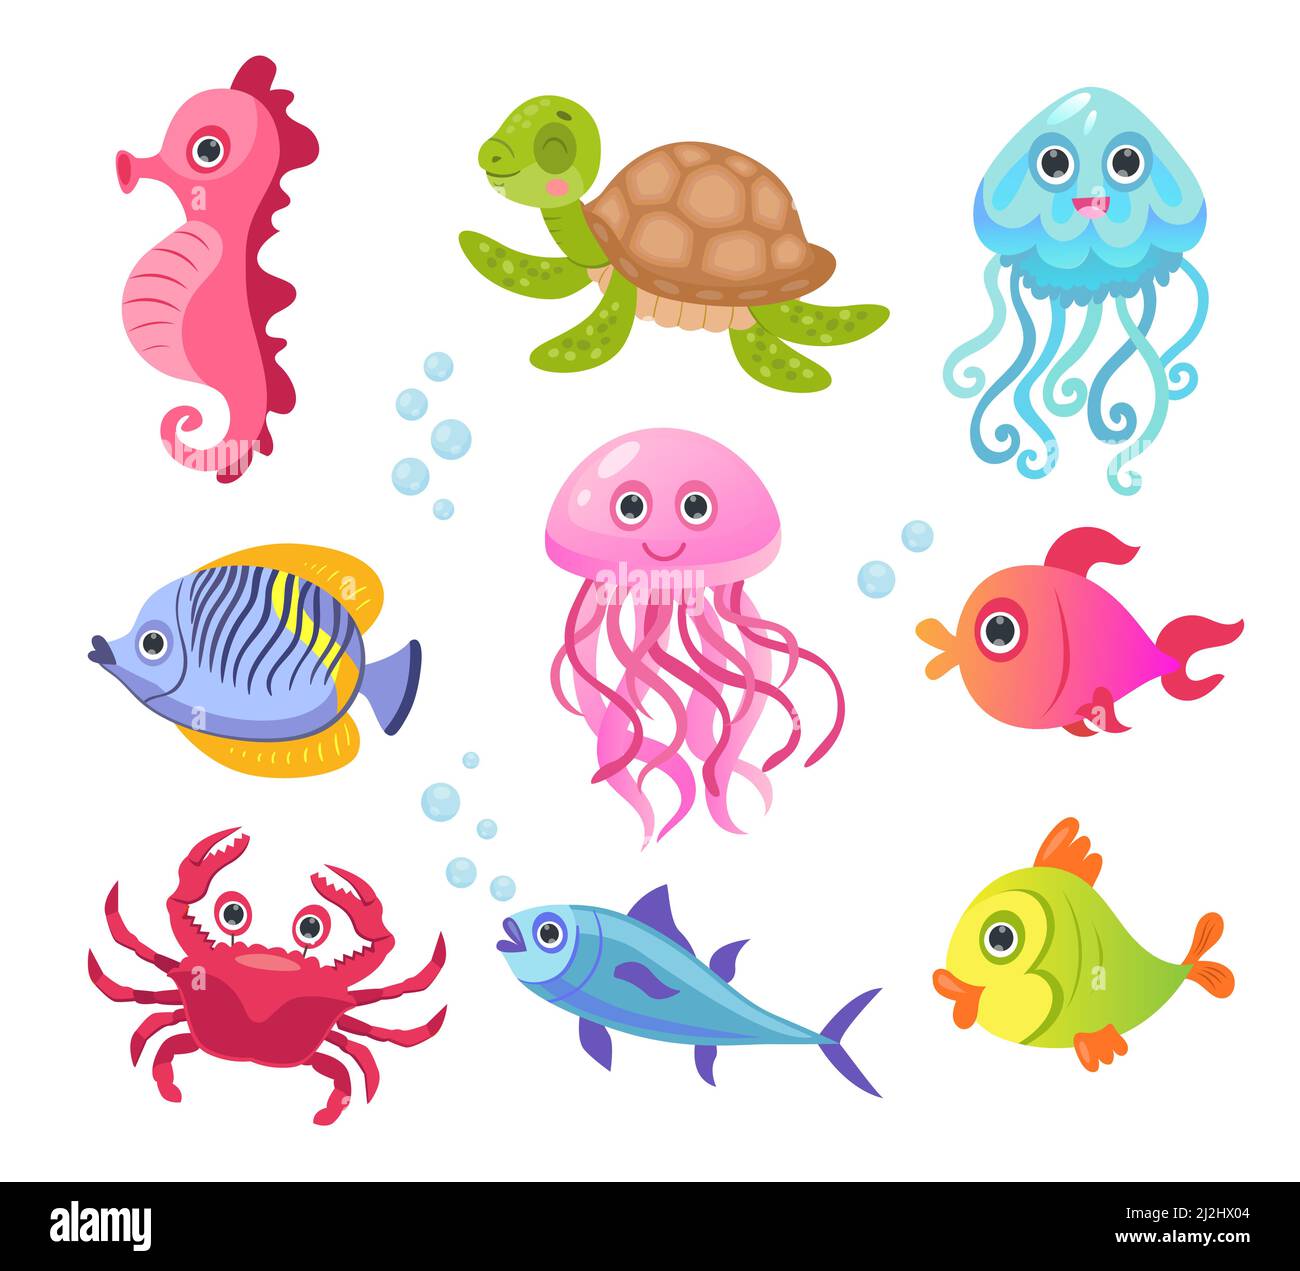 Jeu d'illustrations vectorielles personnages créature océan ou mer.Mignons animaux sous-marins amusants, poissons, crabe, tortue, méduses,hippocampe pour enfants Illustration de Vecteur